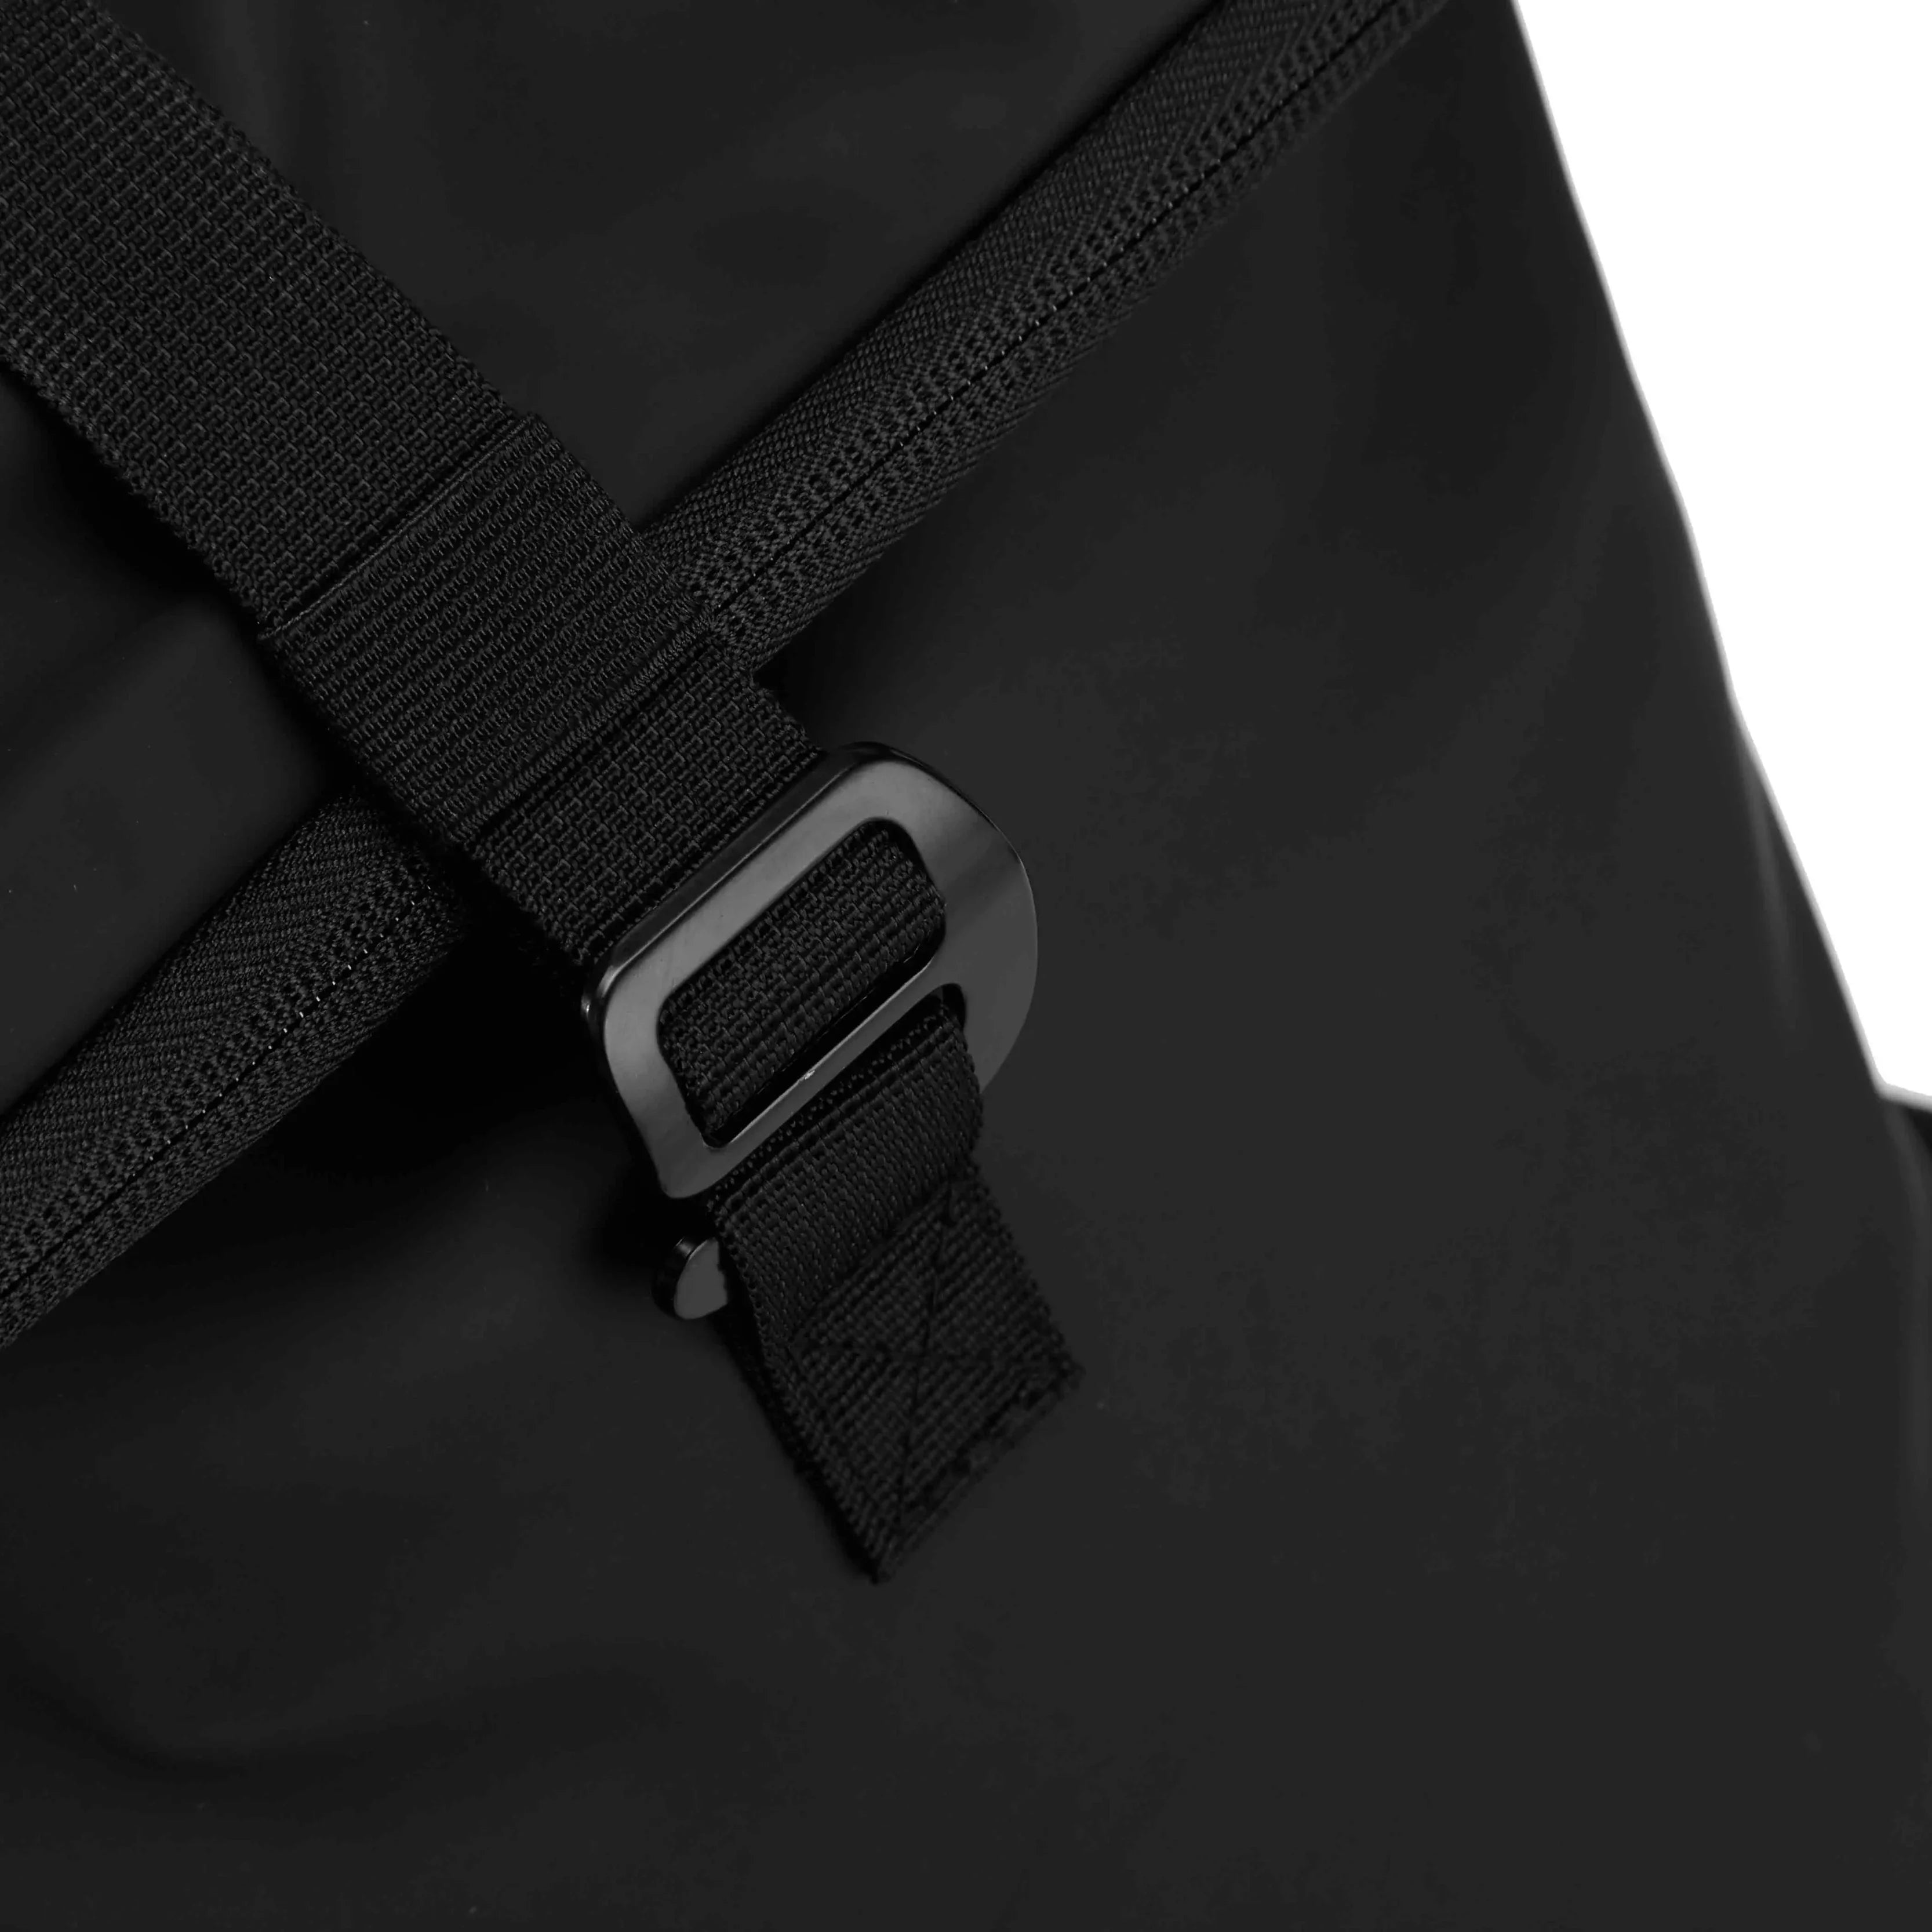 koffer-direkt.de Rolltop leisure backpack 41 cm - anthracite